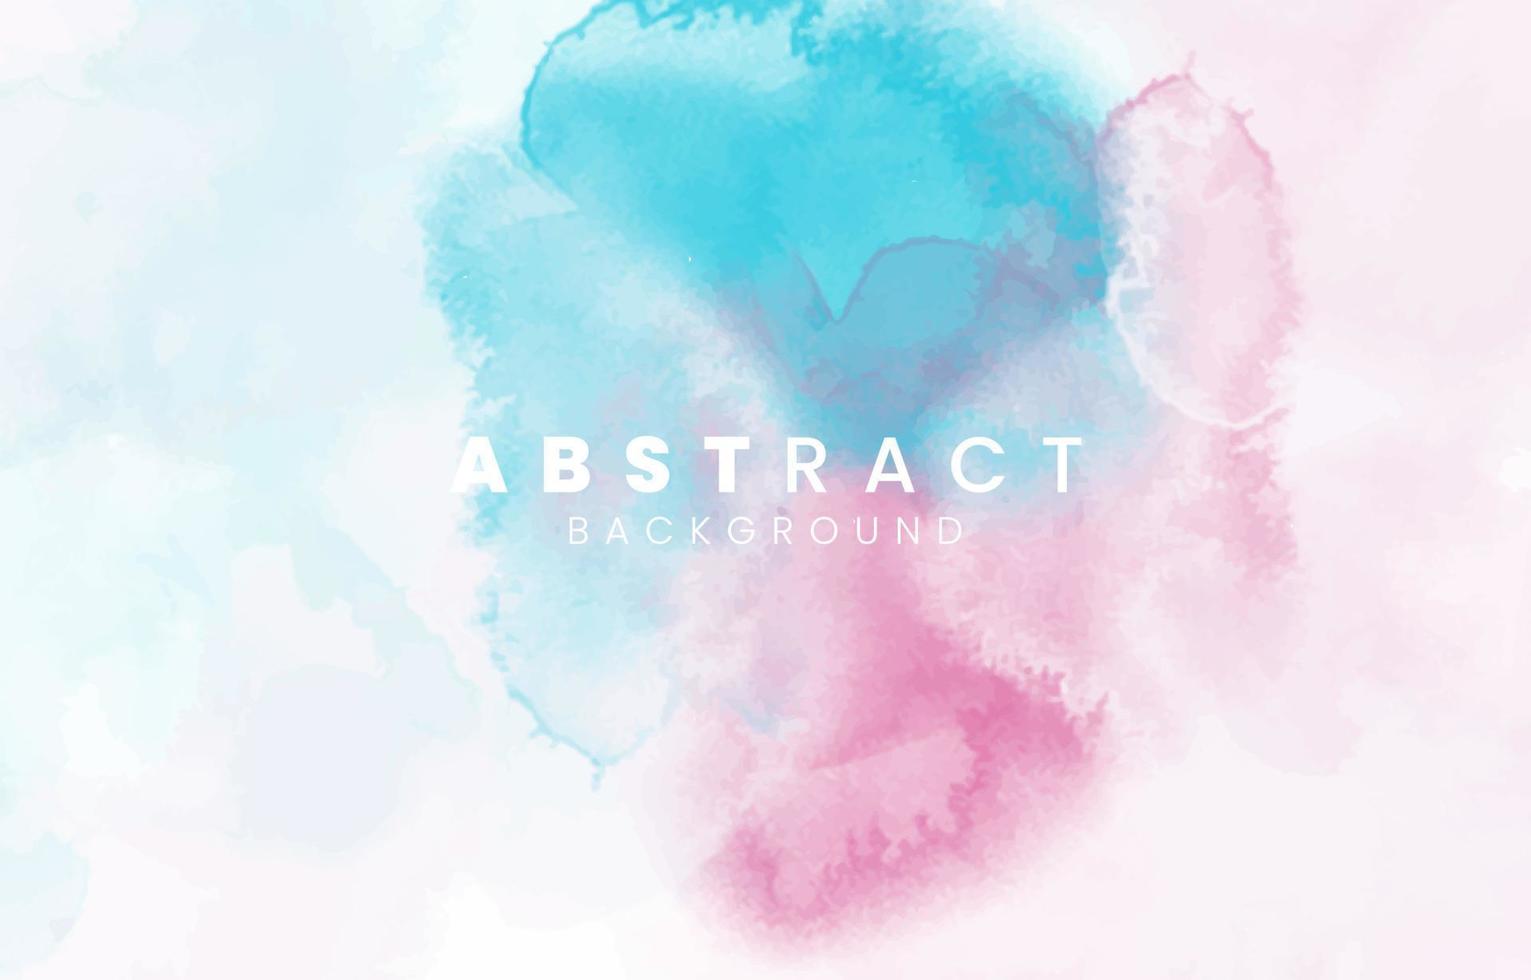 abstracte kleurrijke aquarel voor achtergrond. vector